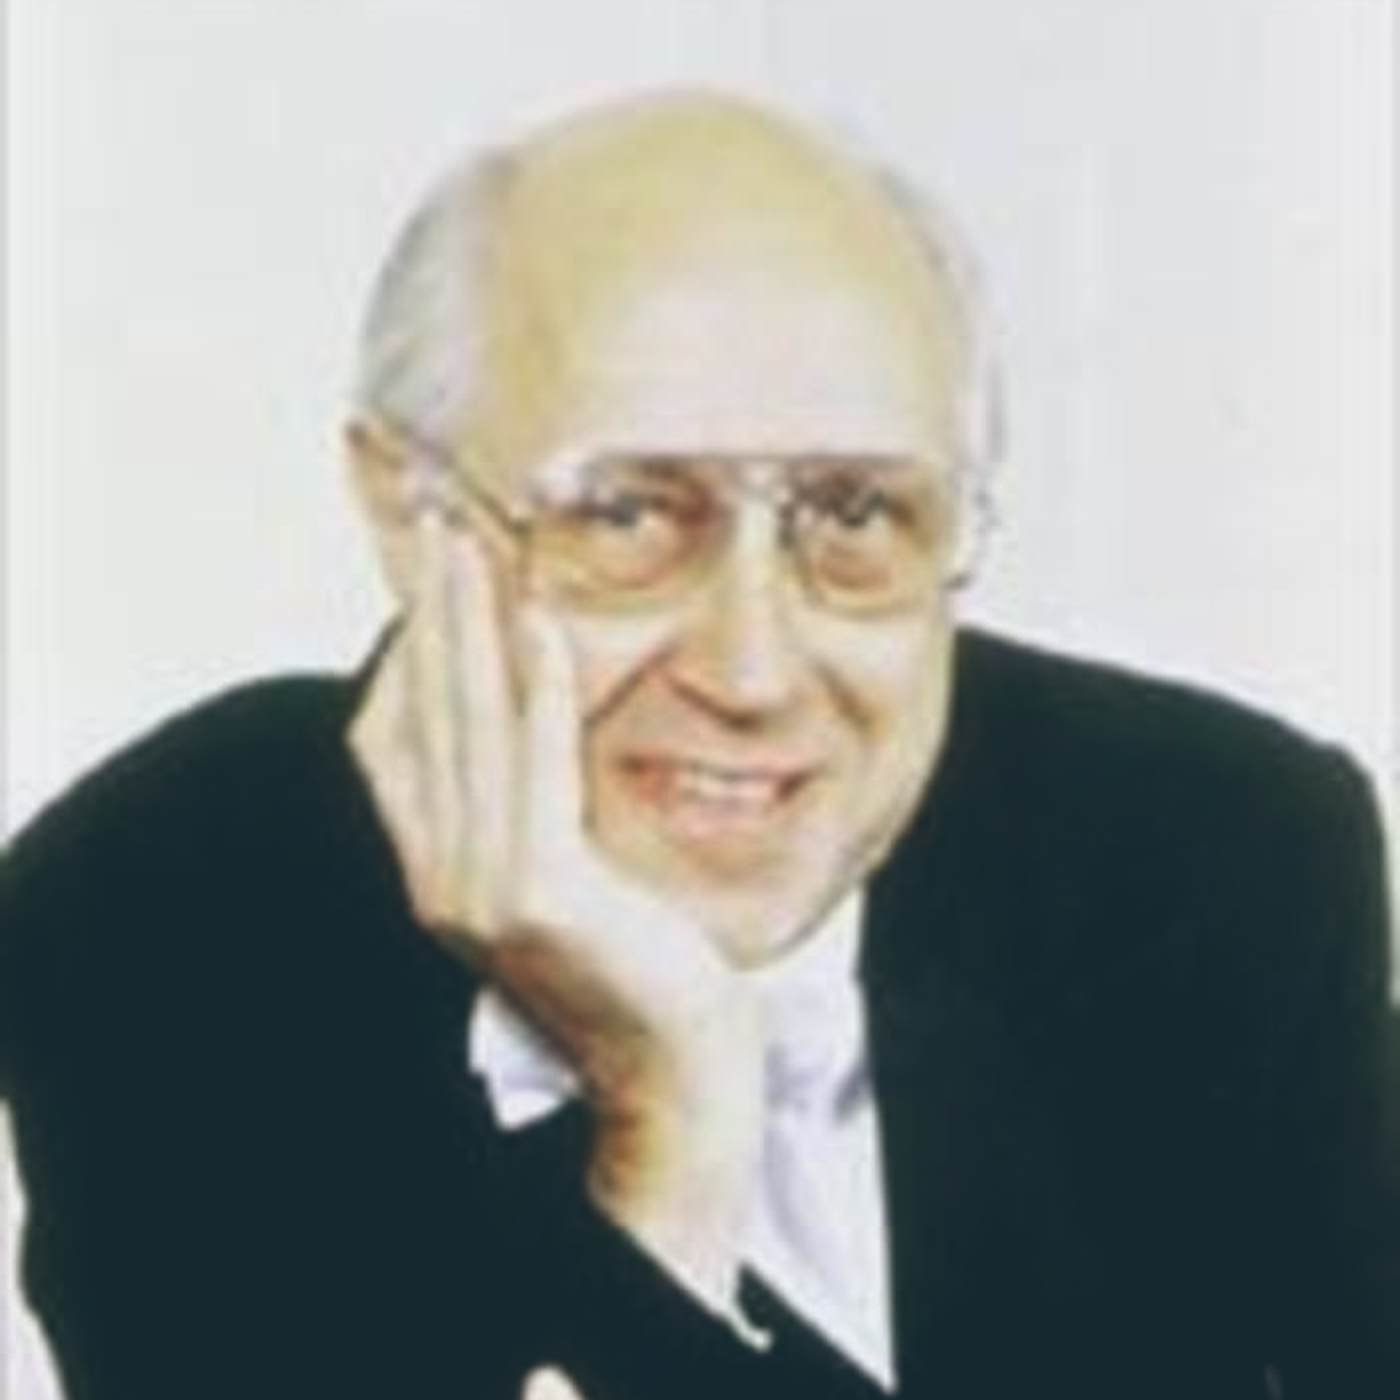 Mstislav Rostropovich